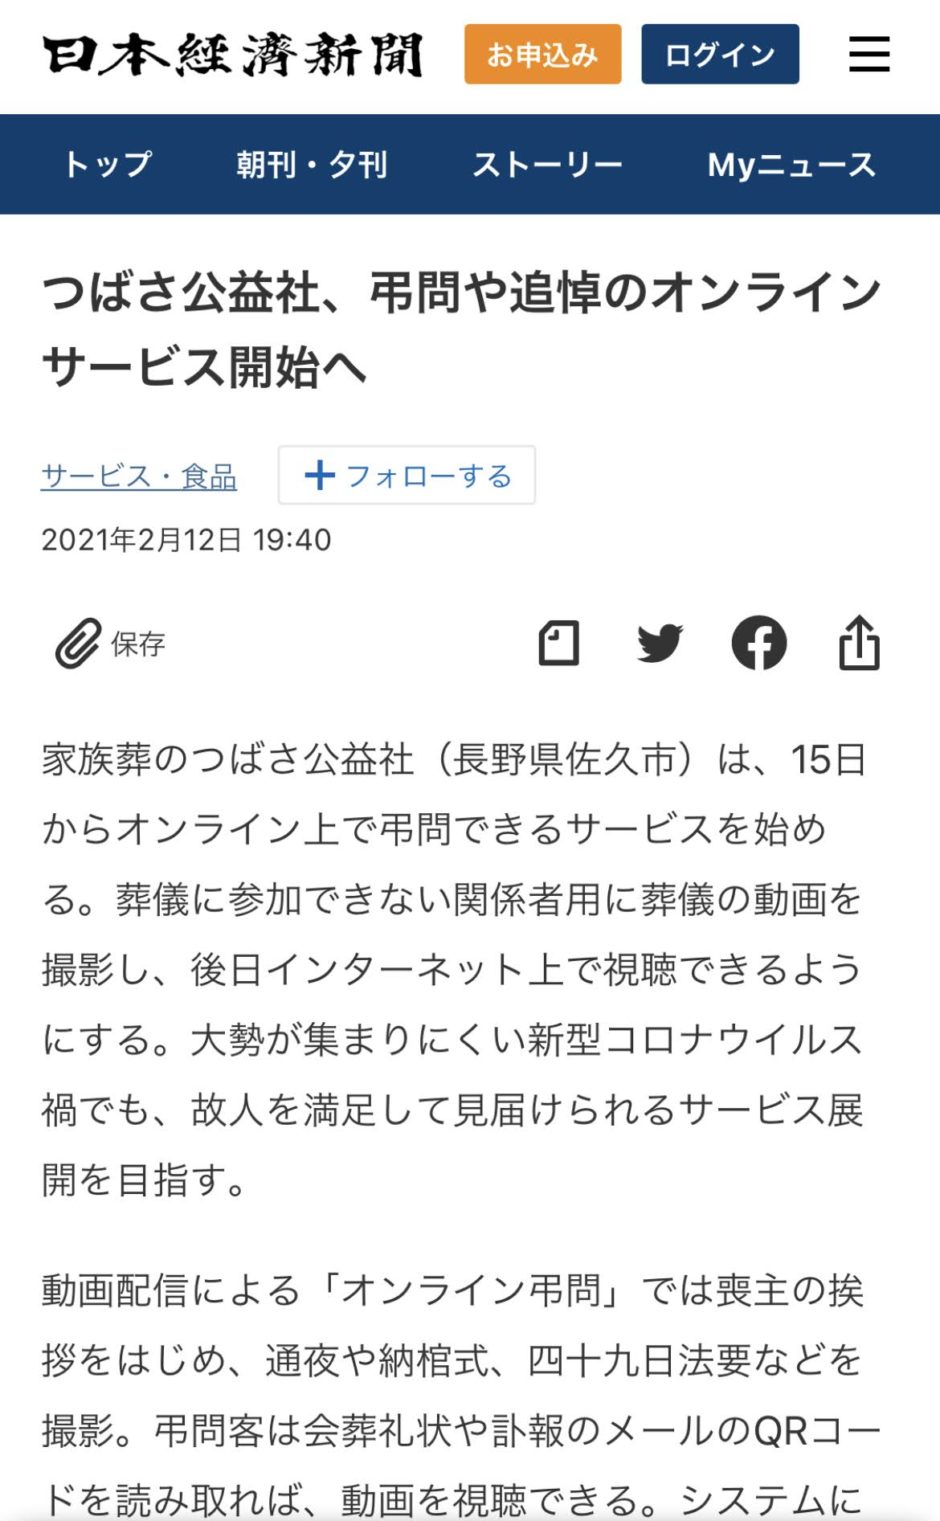 21 02 13 日本経済新聞へつばさ公益社の オンライン弔問 追悼 サービスが紹介されました 家族葬のつばさホール 公式